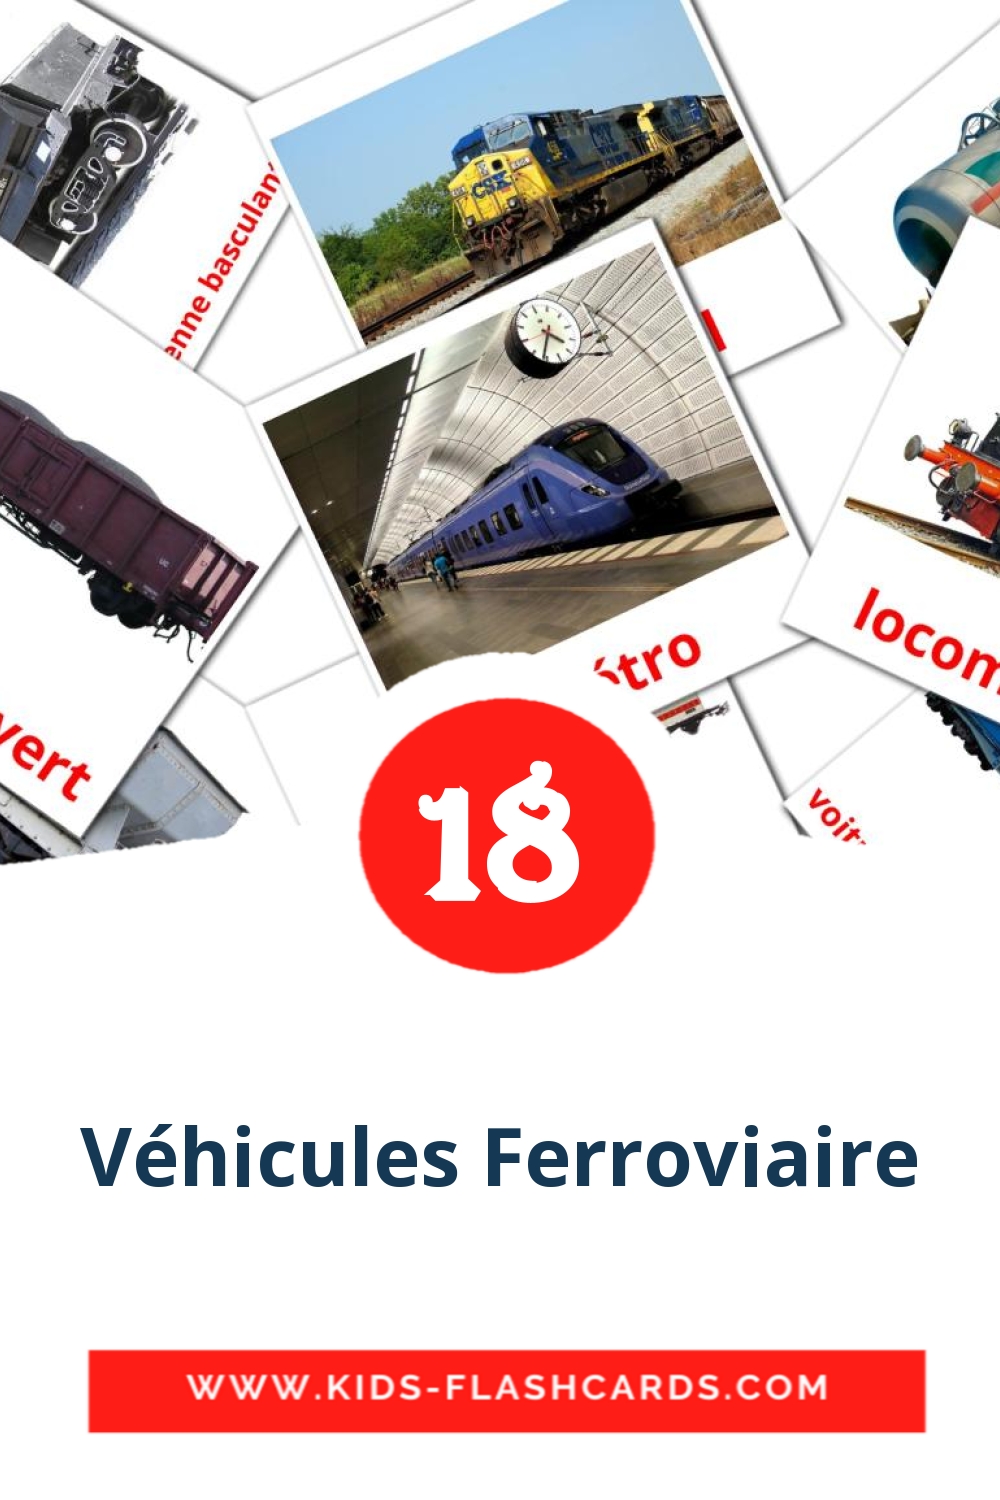 Véhicules Ferroviaire на французском для Детского Сада (18 карточек)